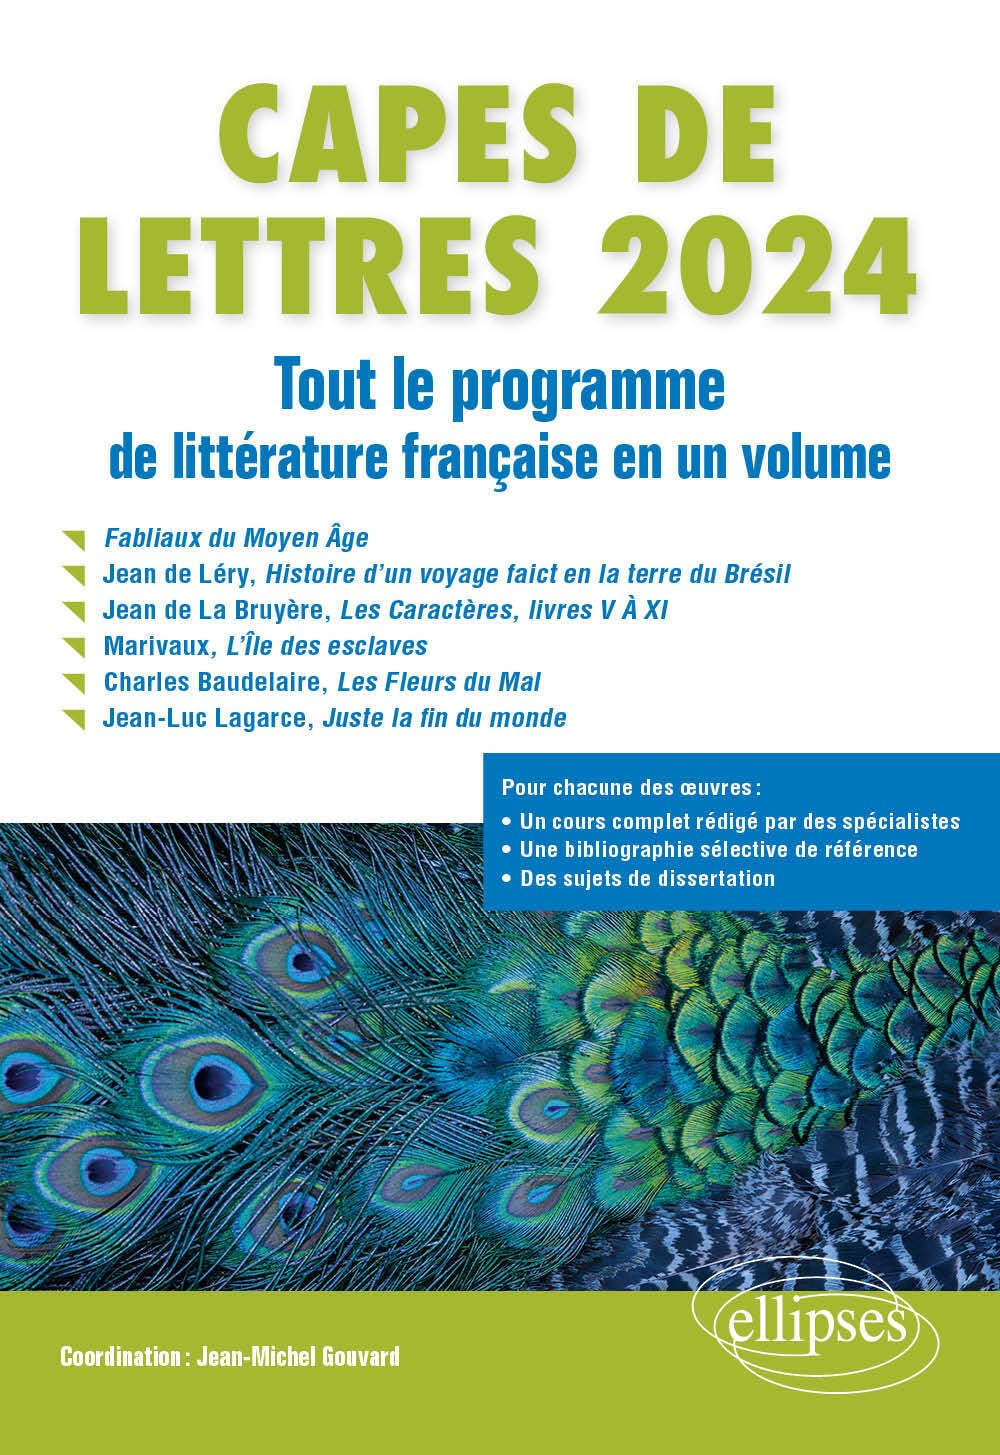 Capes de lettres 2024 : tout le programme de littérature française en un volume